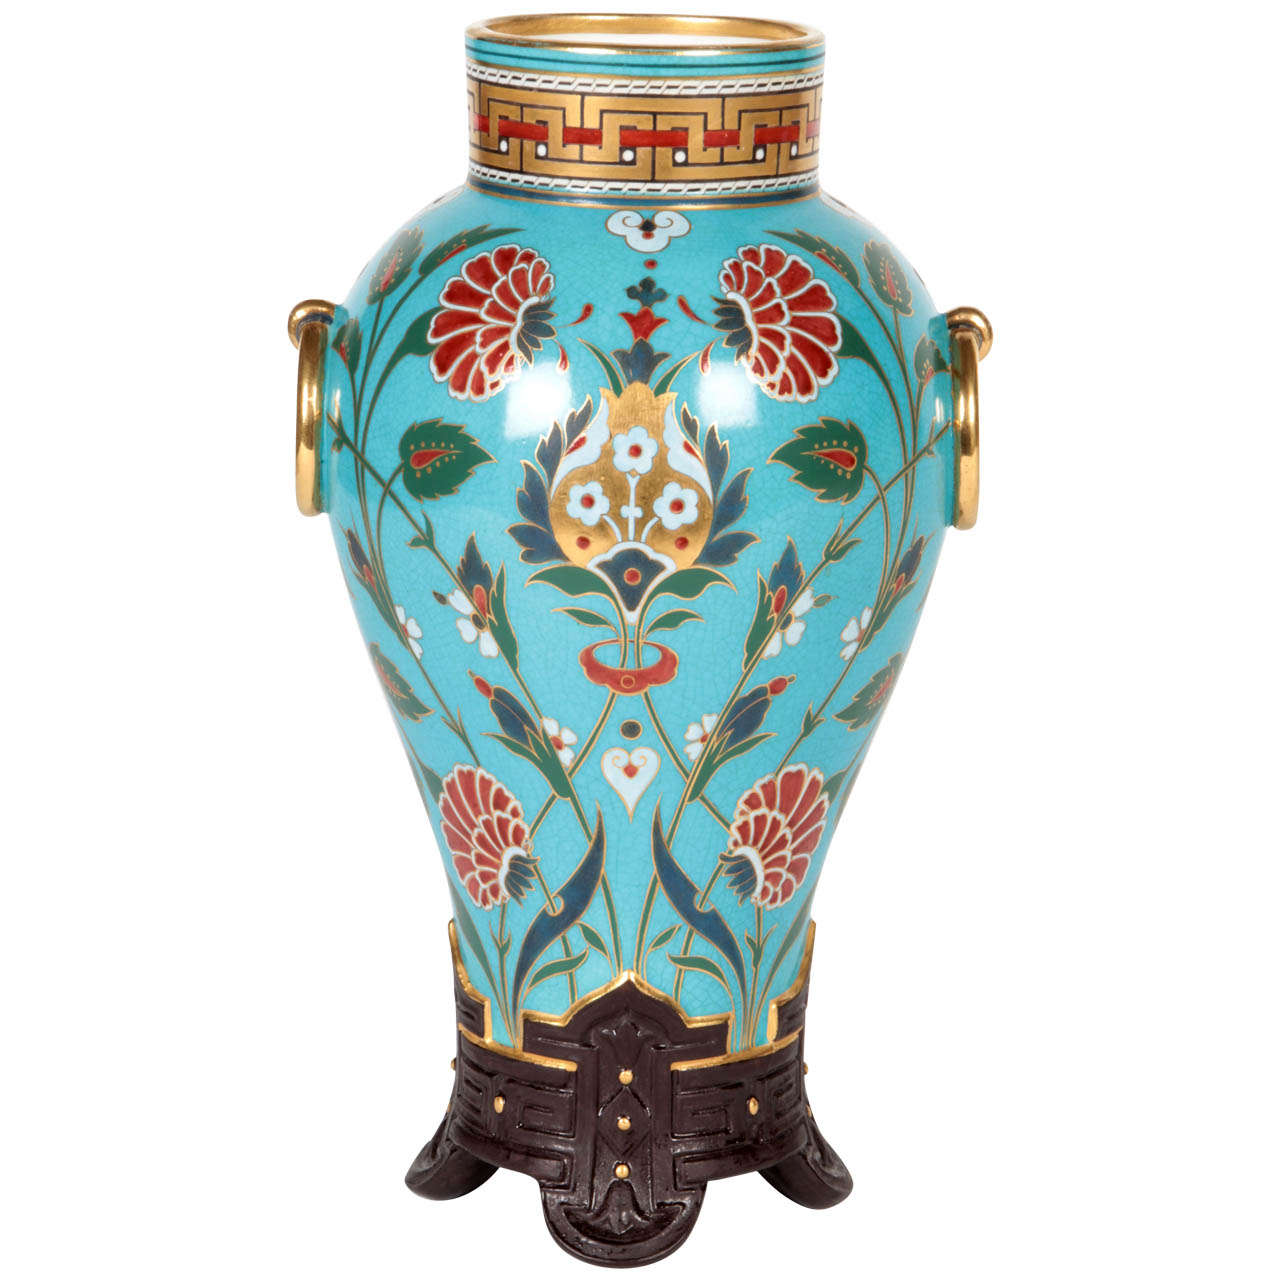 Christopher Dresser /Minton Aesthetic Movement “Cloisonné” Vase 1867 For Sale